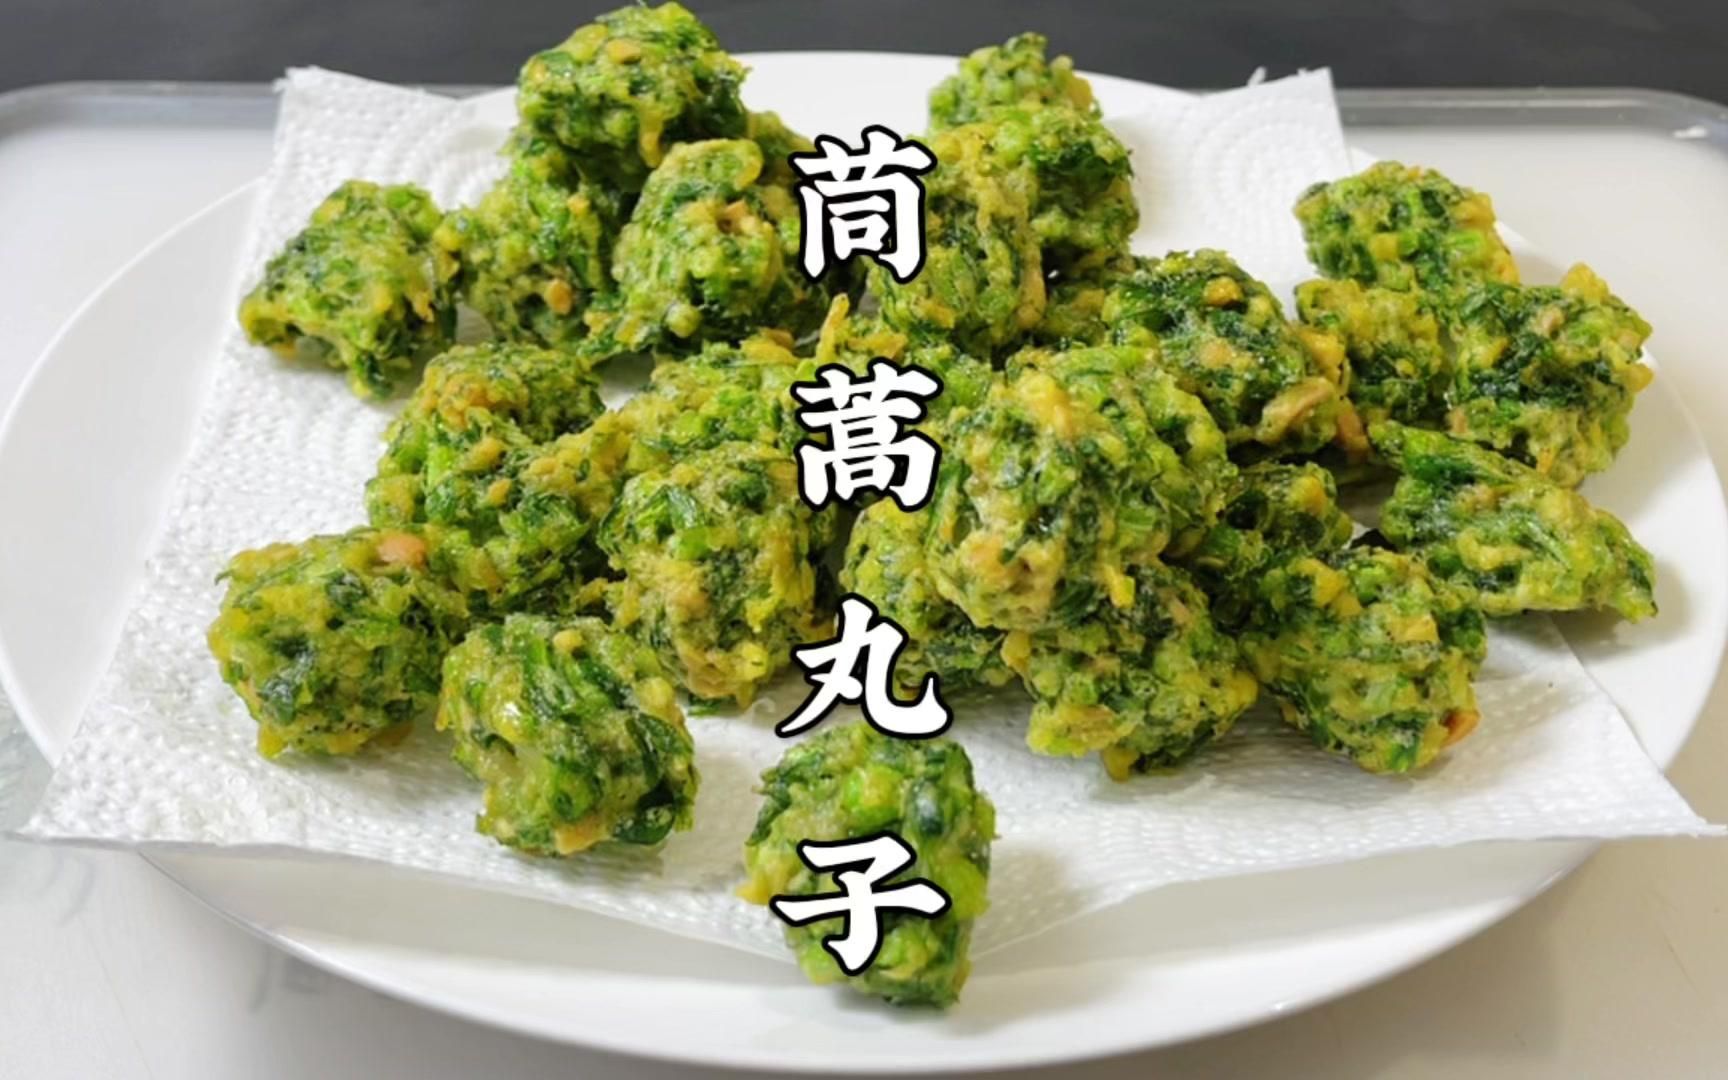 茼蒿又叫皇帝菜,经常吃茼蒿安心气养脾胃,用它炸蔬菜丸子太香了